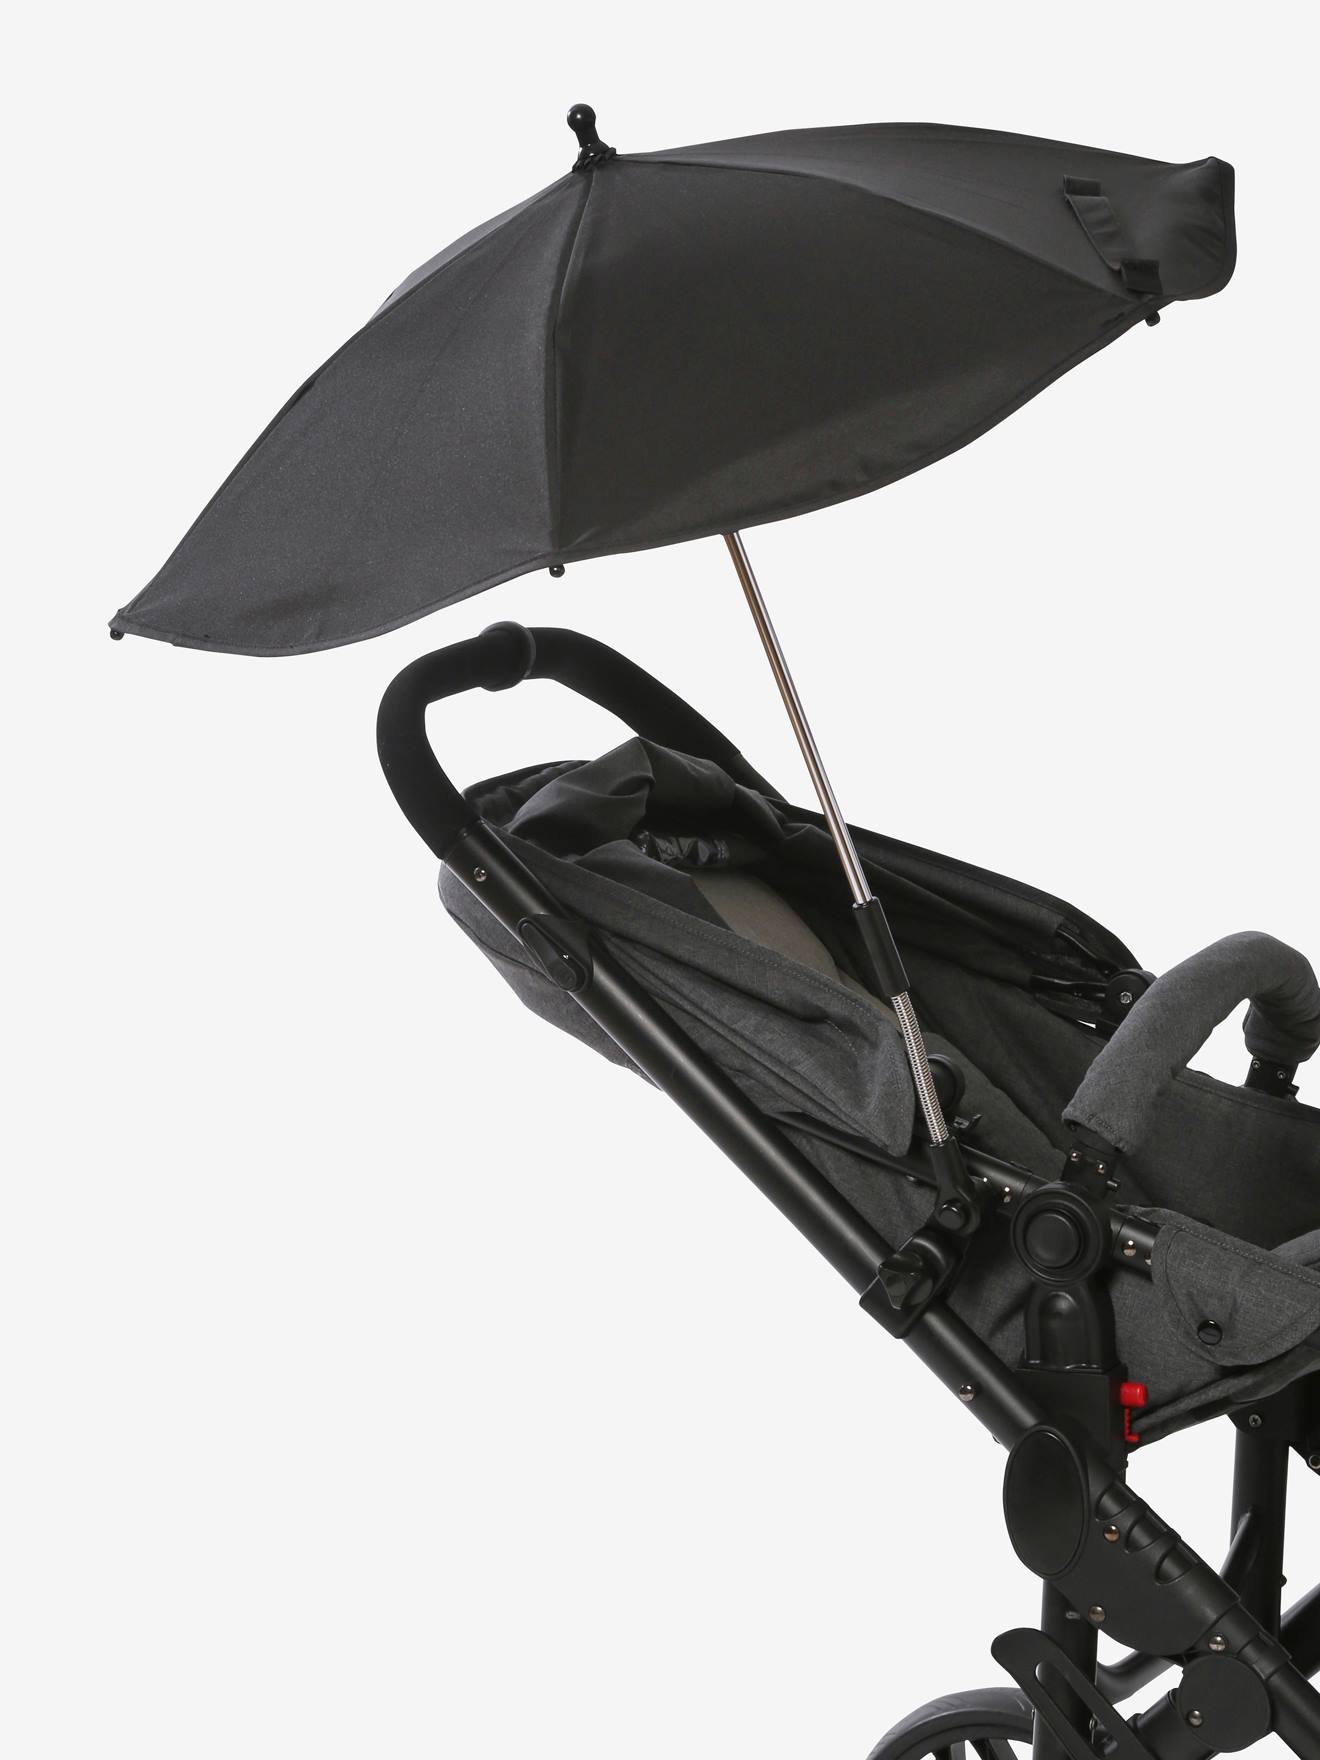 Sonnenschirm für Kinderwagen mit Gelenk Grau Bamisol Attitude universelle Anbringmöglichkeit 